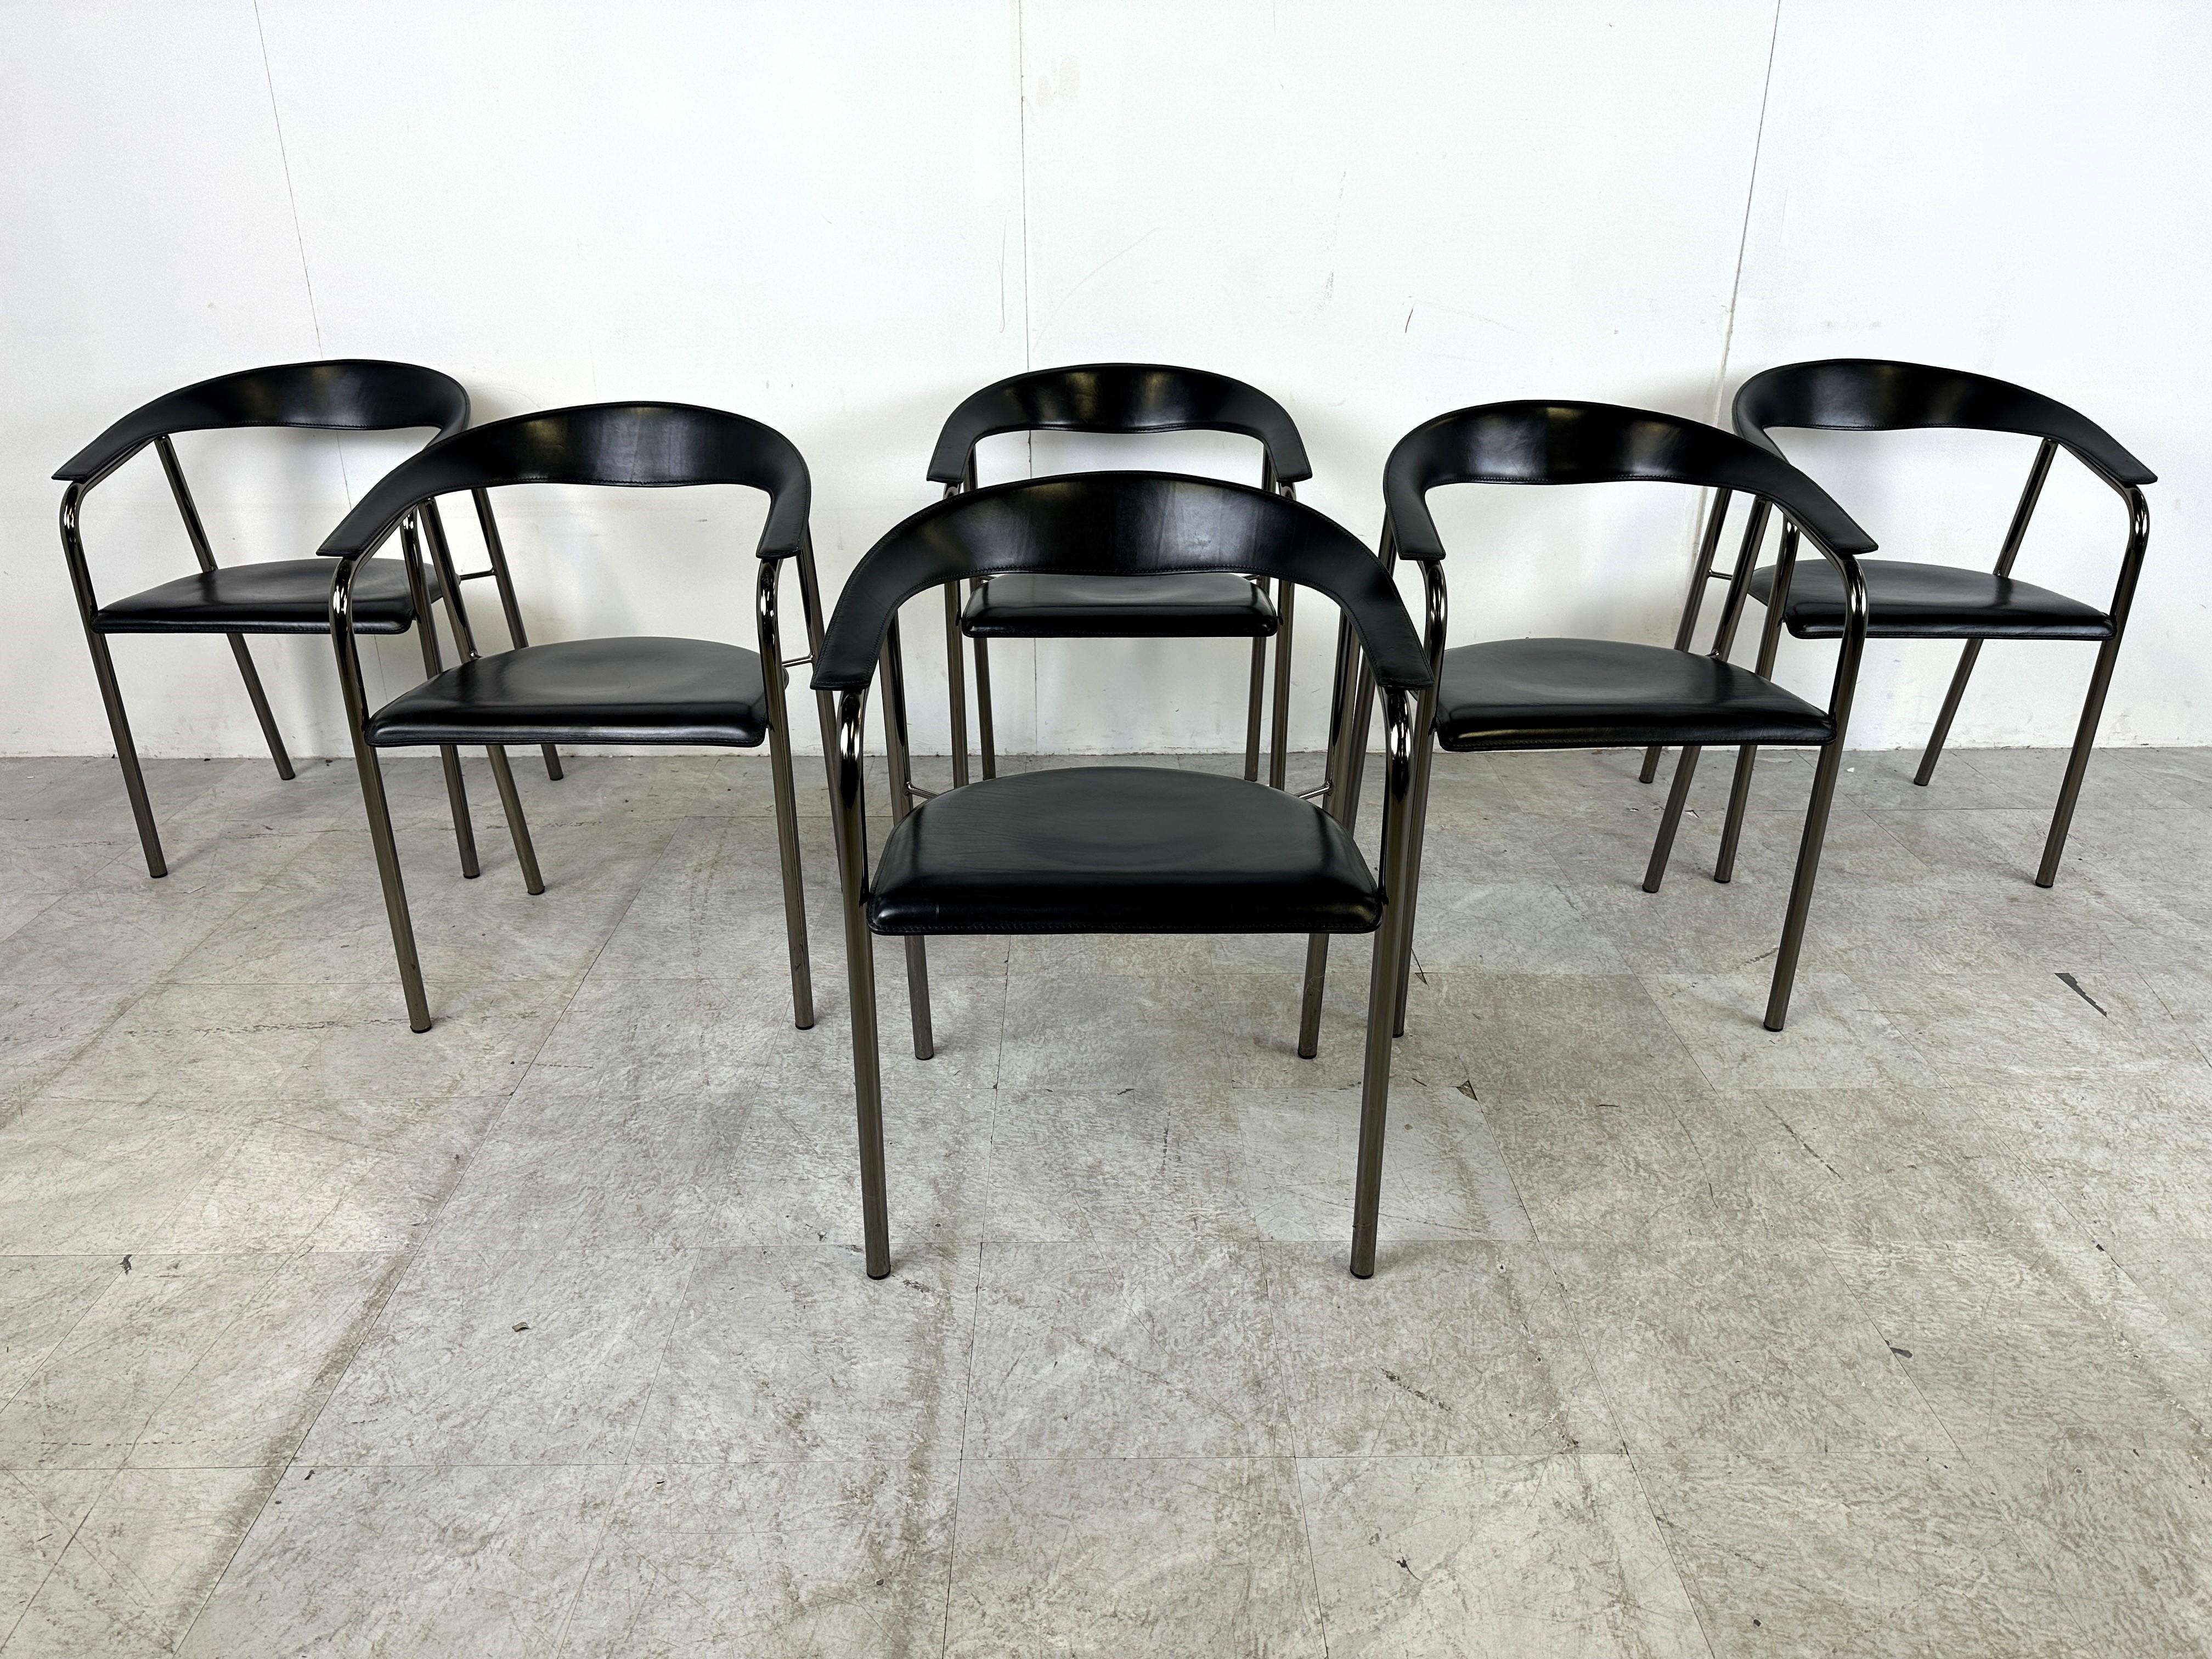 Ensemble de 6 fauteuils en cuir noir par Arrben Italie.

De beaux dossiers incurvés formant les accoudoirs en cuir, avec des sièges en cuir et un cadre en métal noir.

Les chaises portent l'inscription 